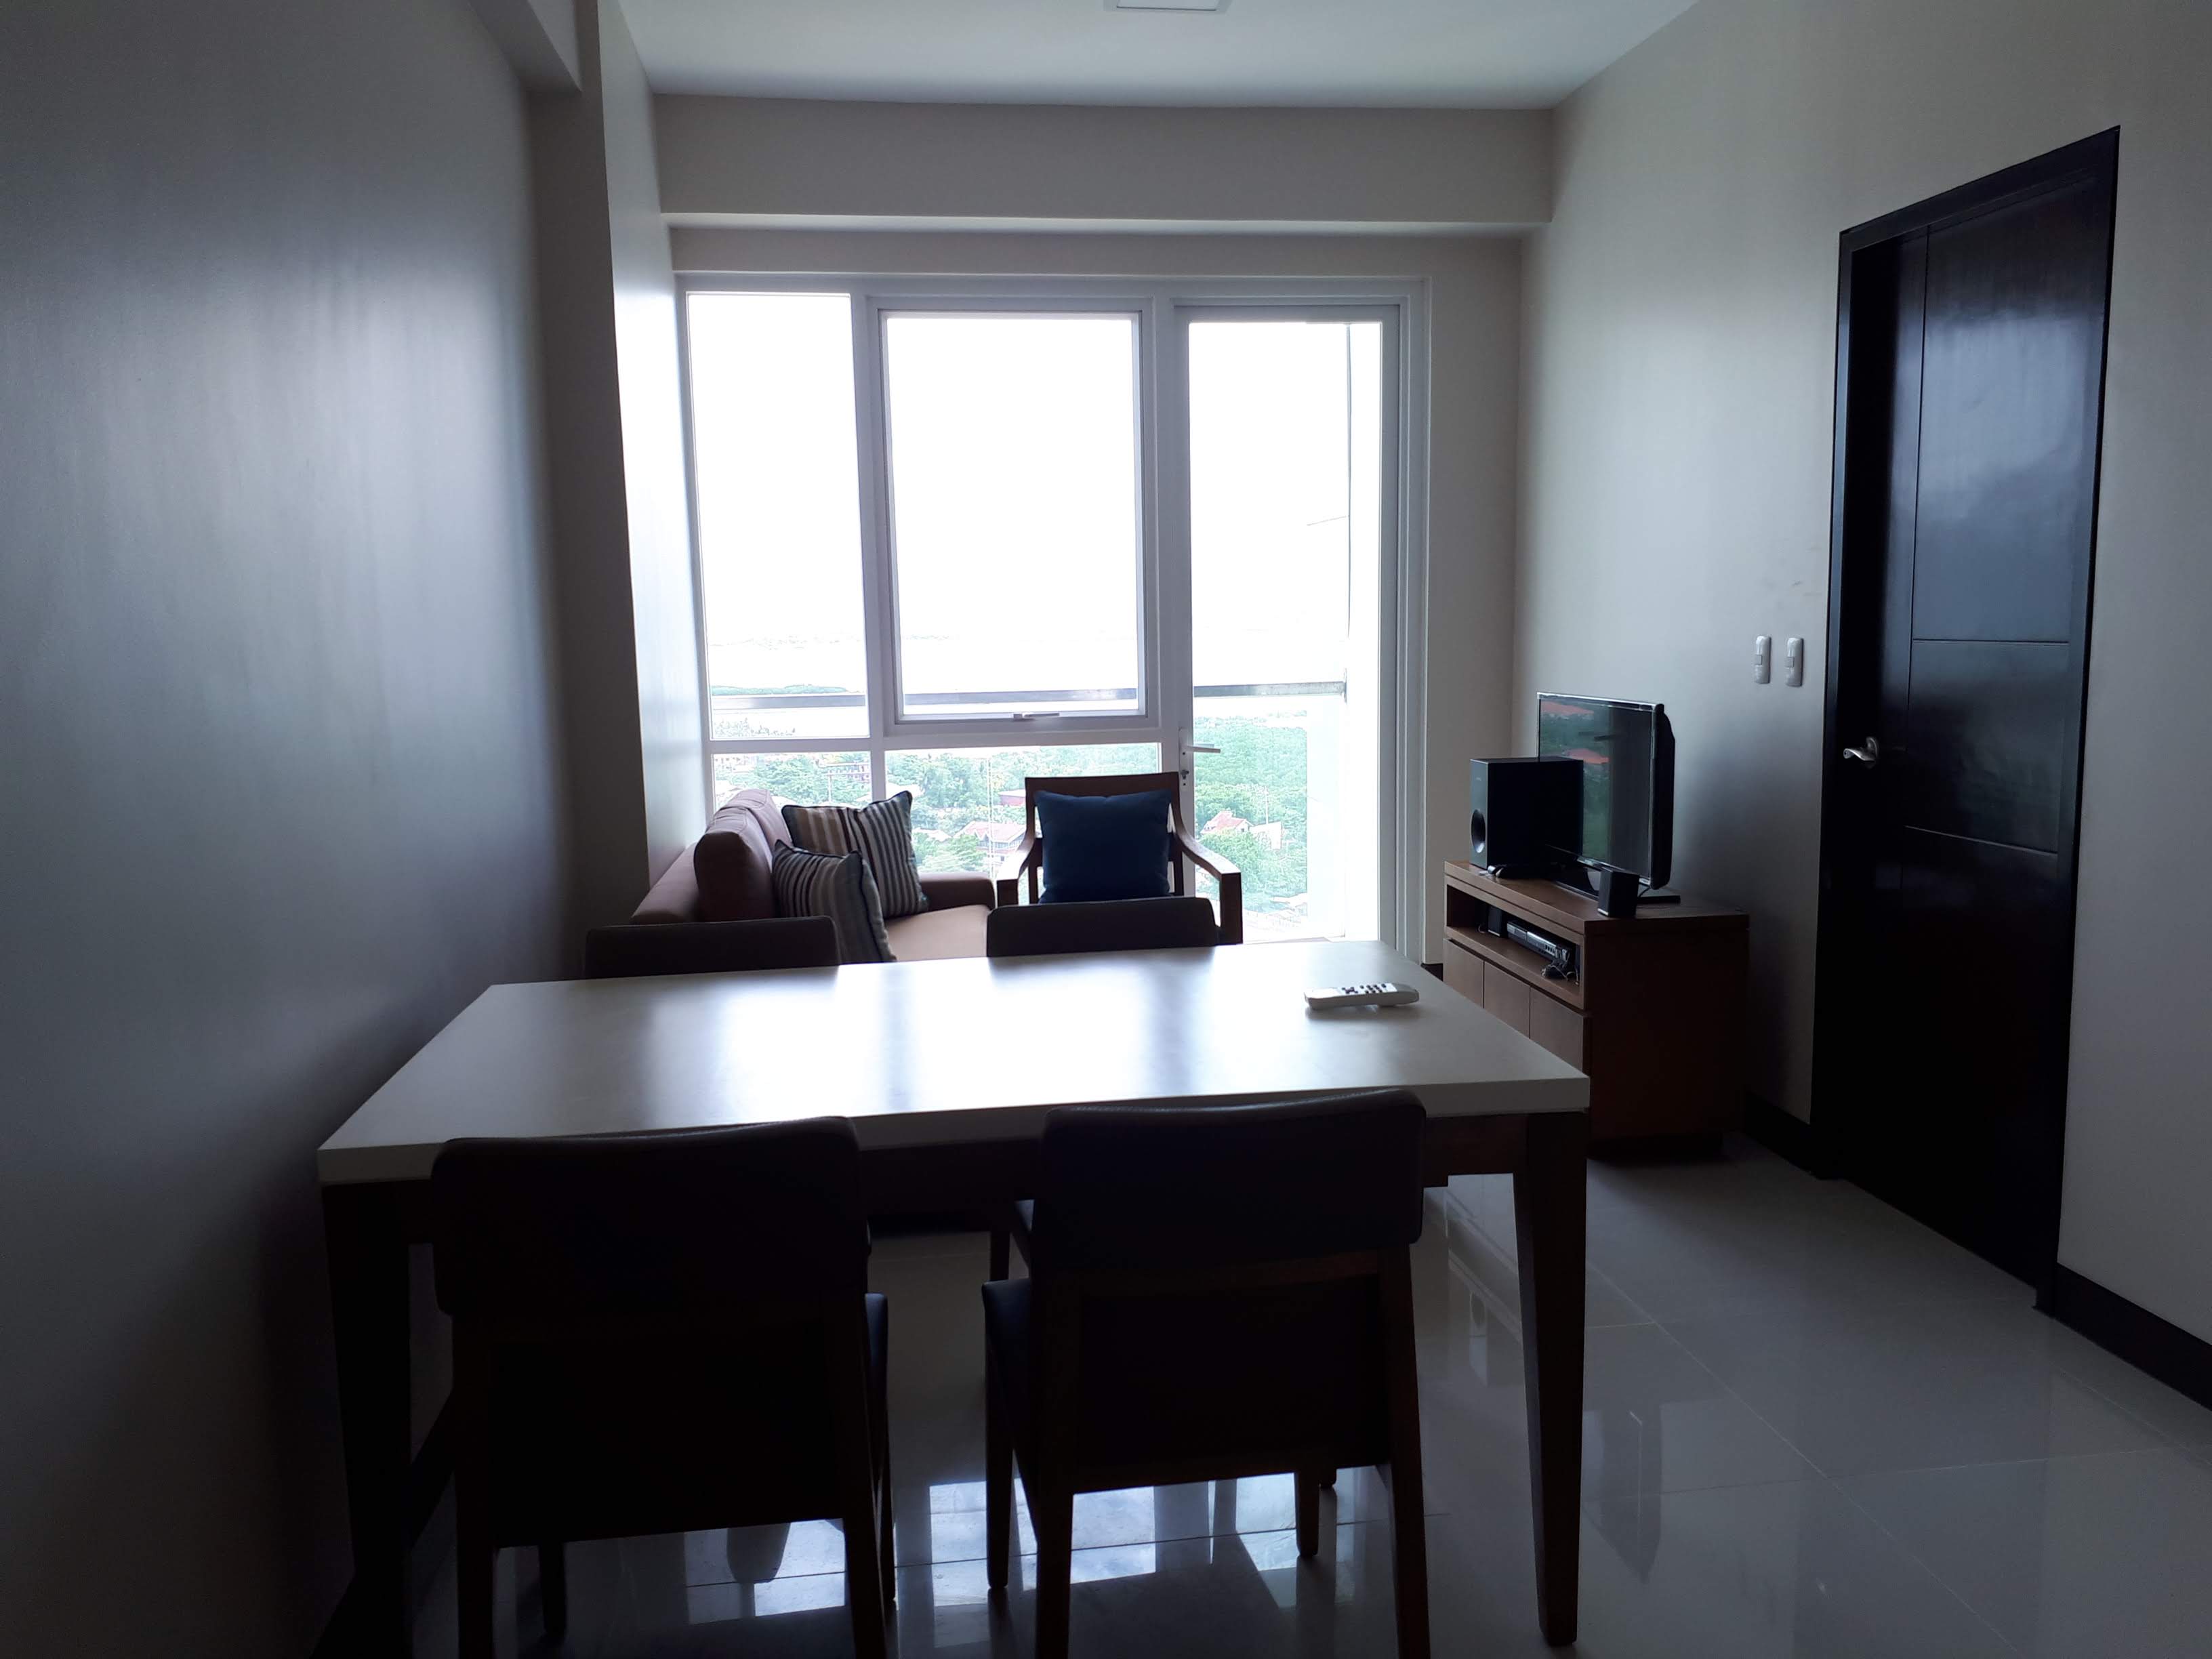 1BR Condominium in Cebu for Sale